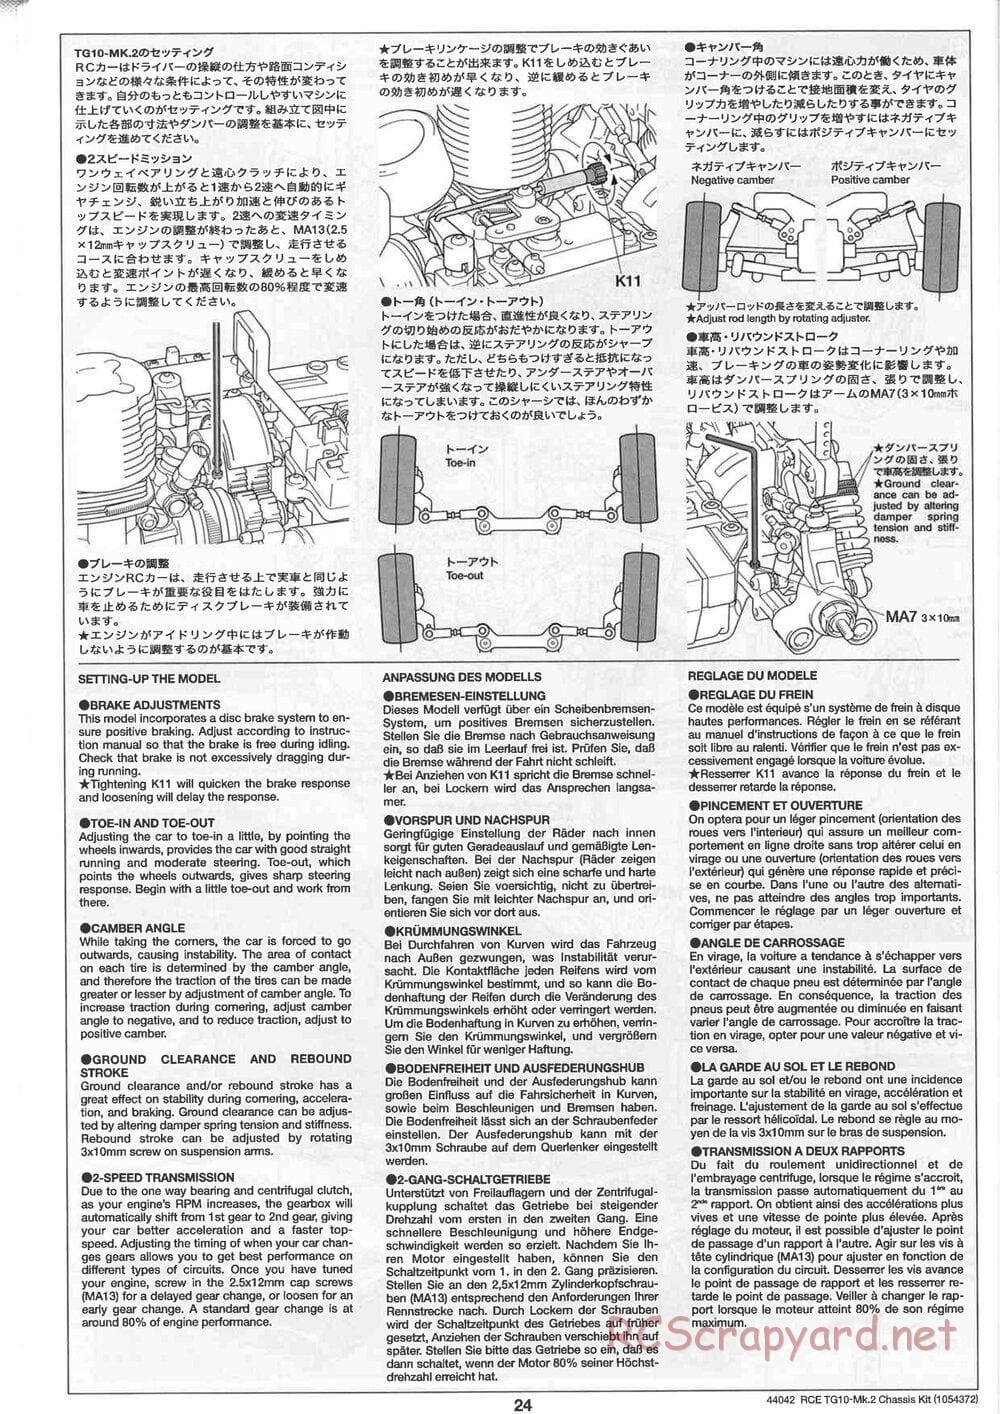 Tamiya - TG10 Mk.2 Chassis - Manual - Page 24